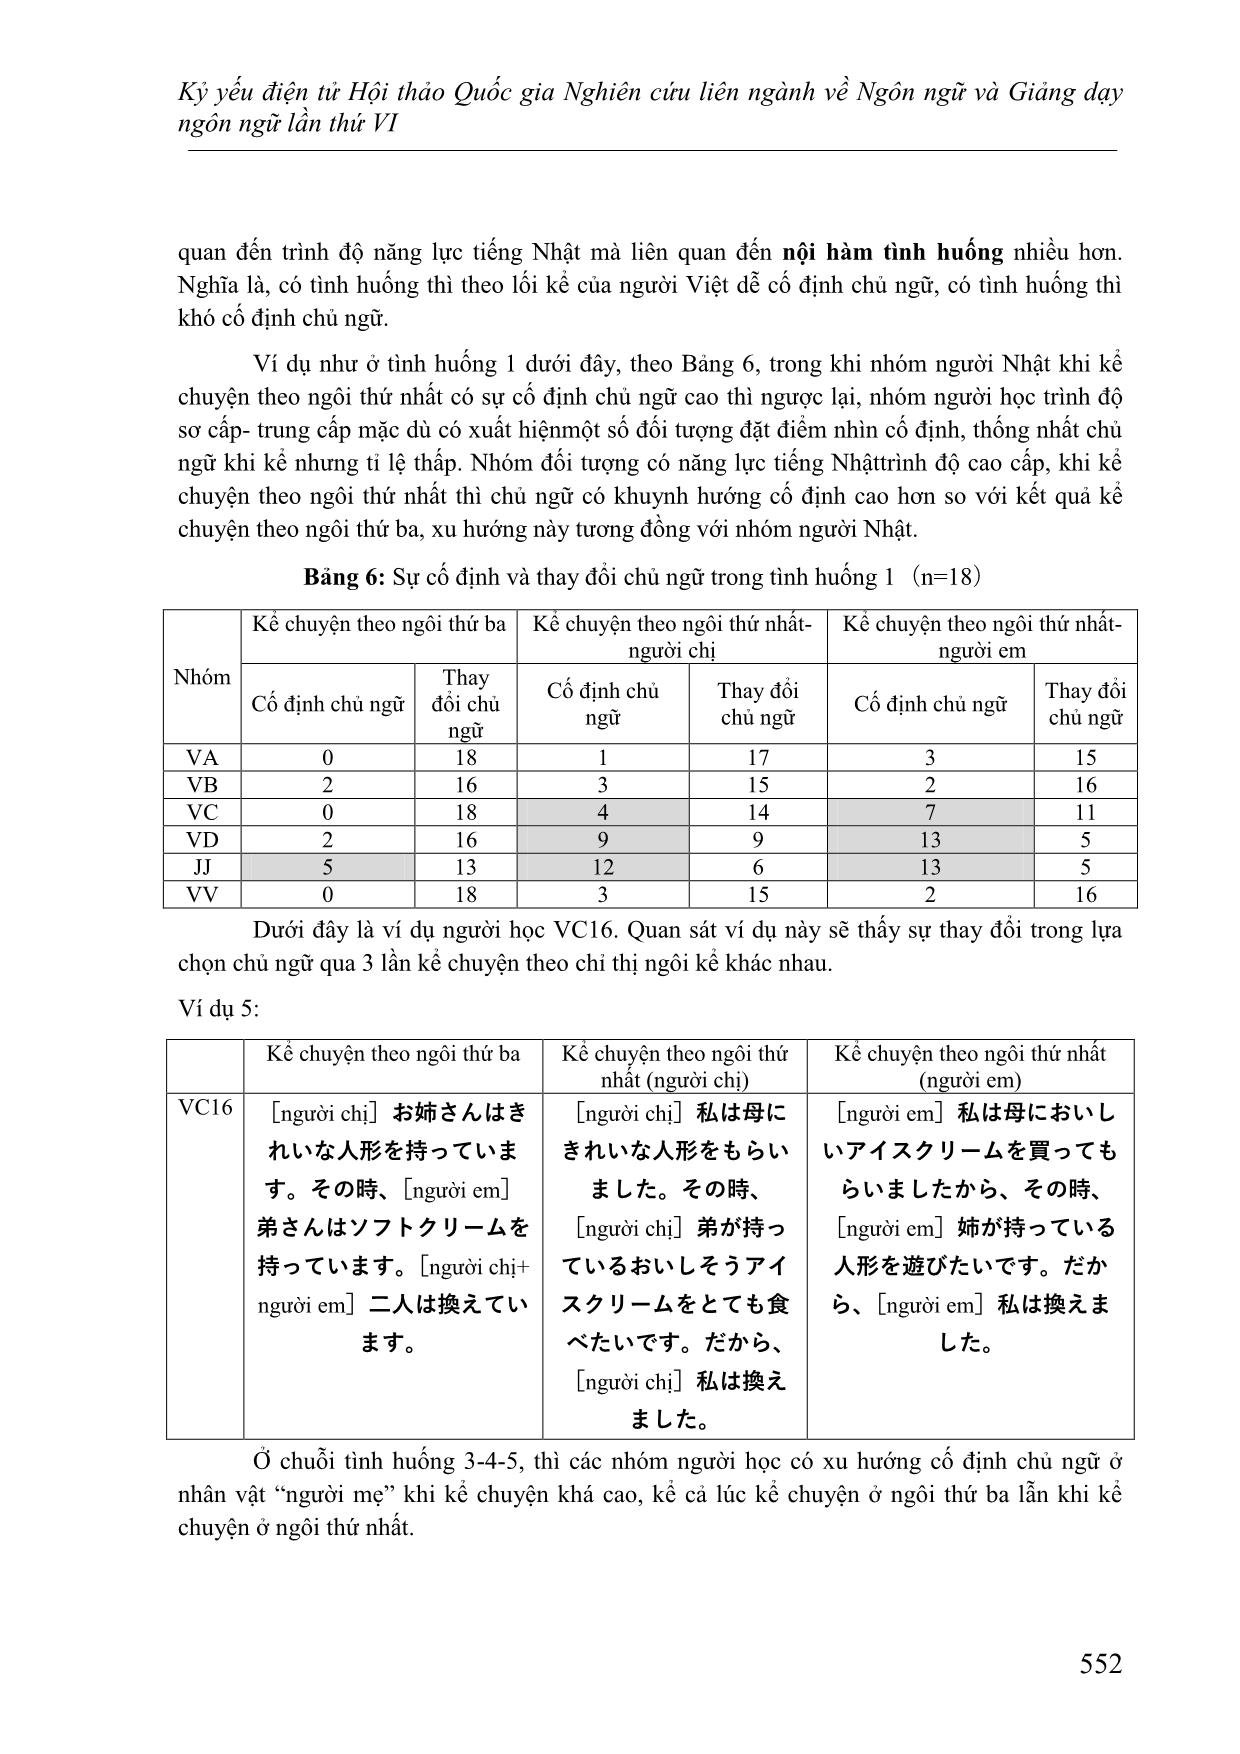 Nghiên cứu về sự lựa chọn chủ ngữ thể hiện điểm nhìn của người Việt học tiếng Nhật khi kể chuyện theo các ngôi kể khác nhau trang 9